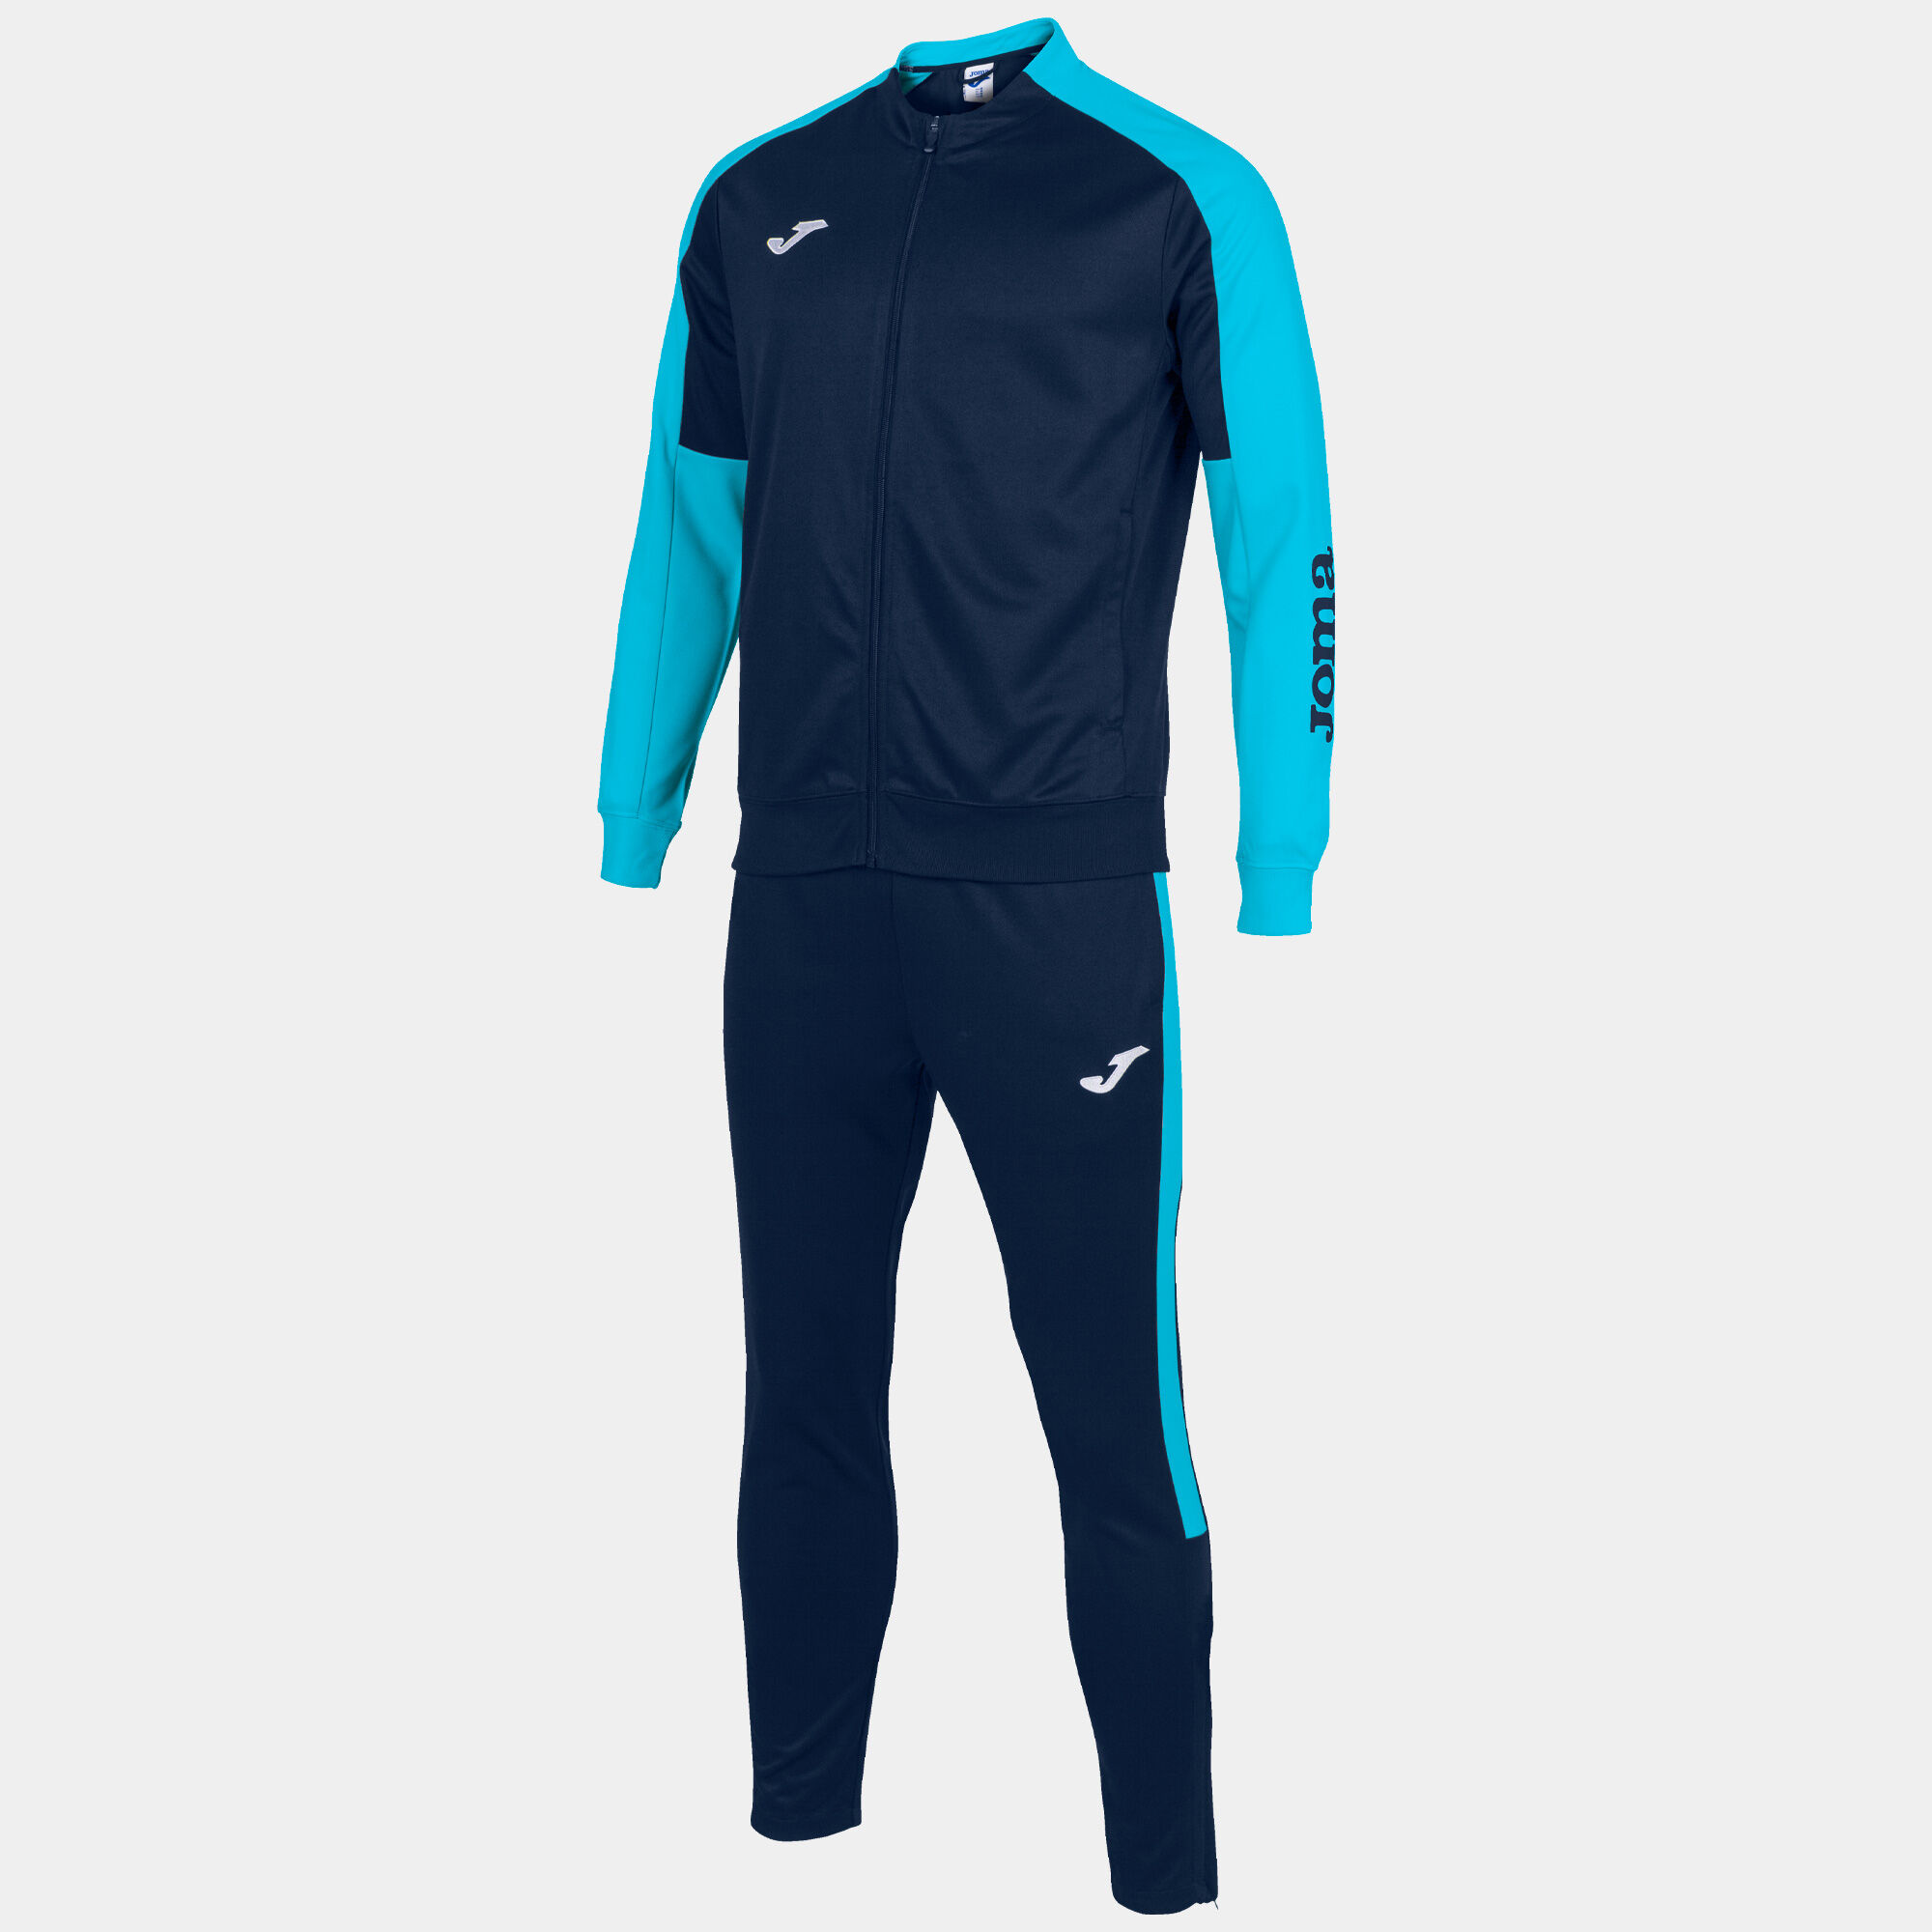 Спортивний костюм чоловічий Joma ECO CHAMPIONSHIP Темно-синій/Бірюзовий